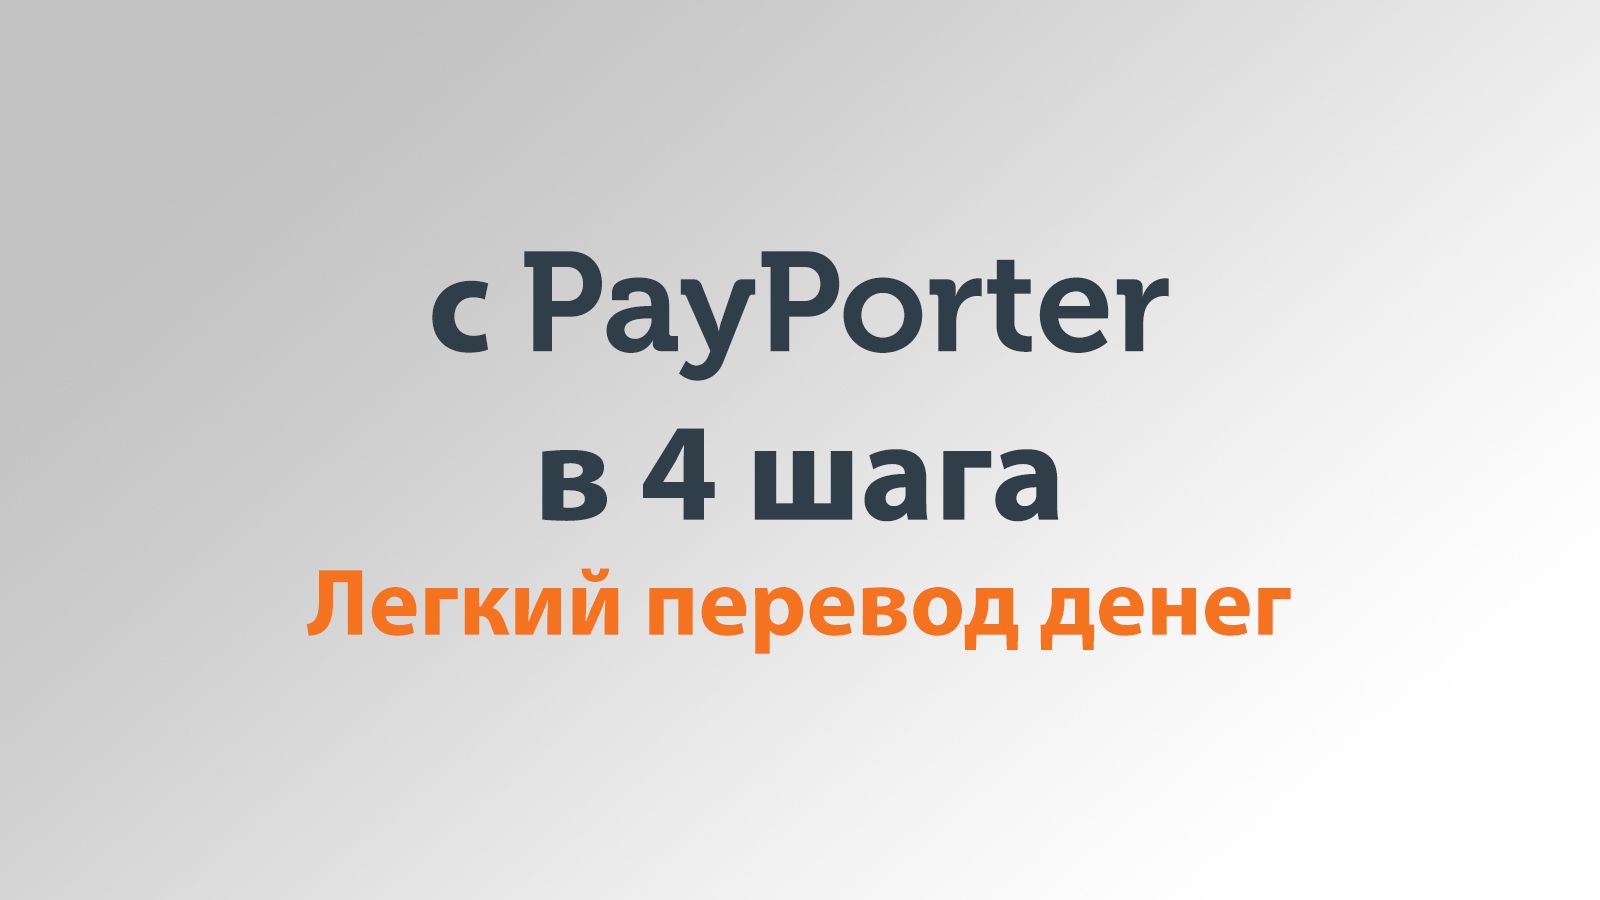 Удобный перевод денег через PayPorter в 4 этапа